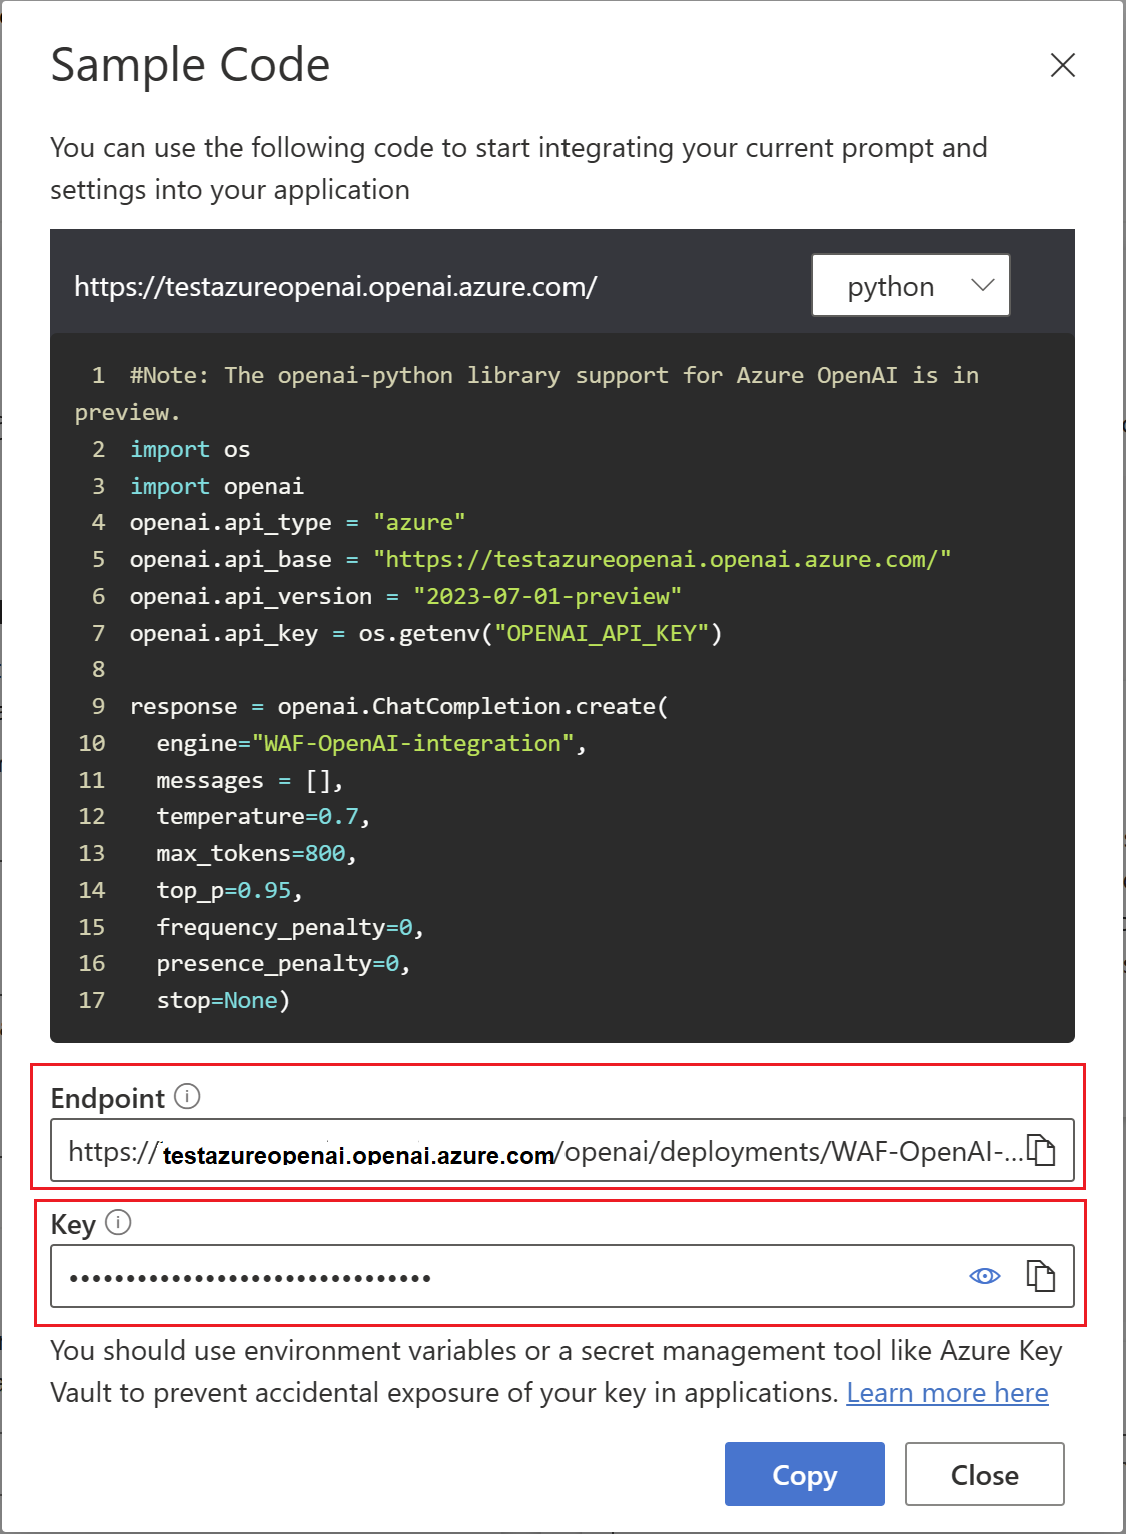 Captura de tela mostrando o código de amostra do Azure OpenAI com Endpoint e Key.